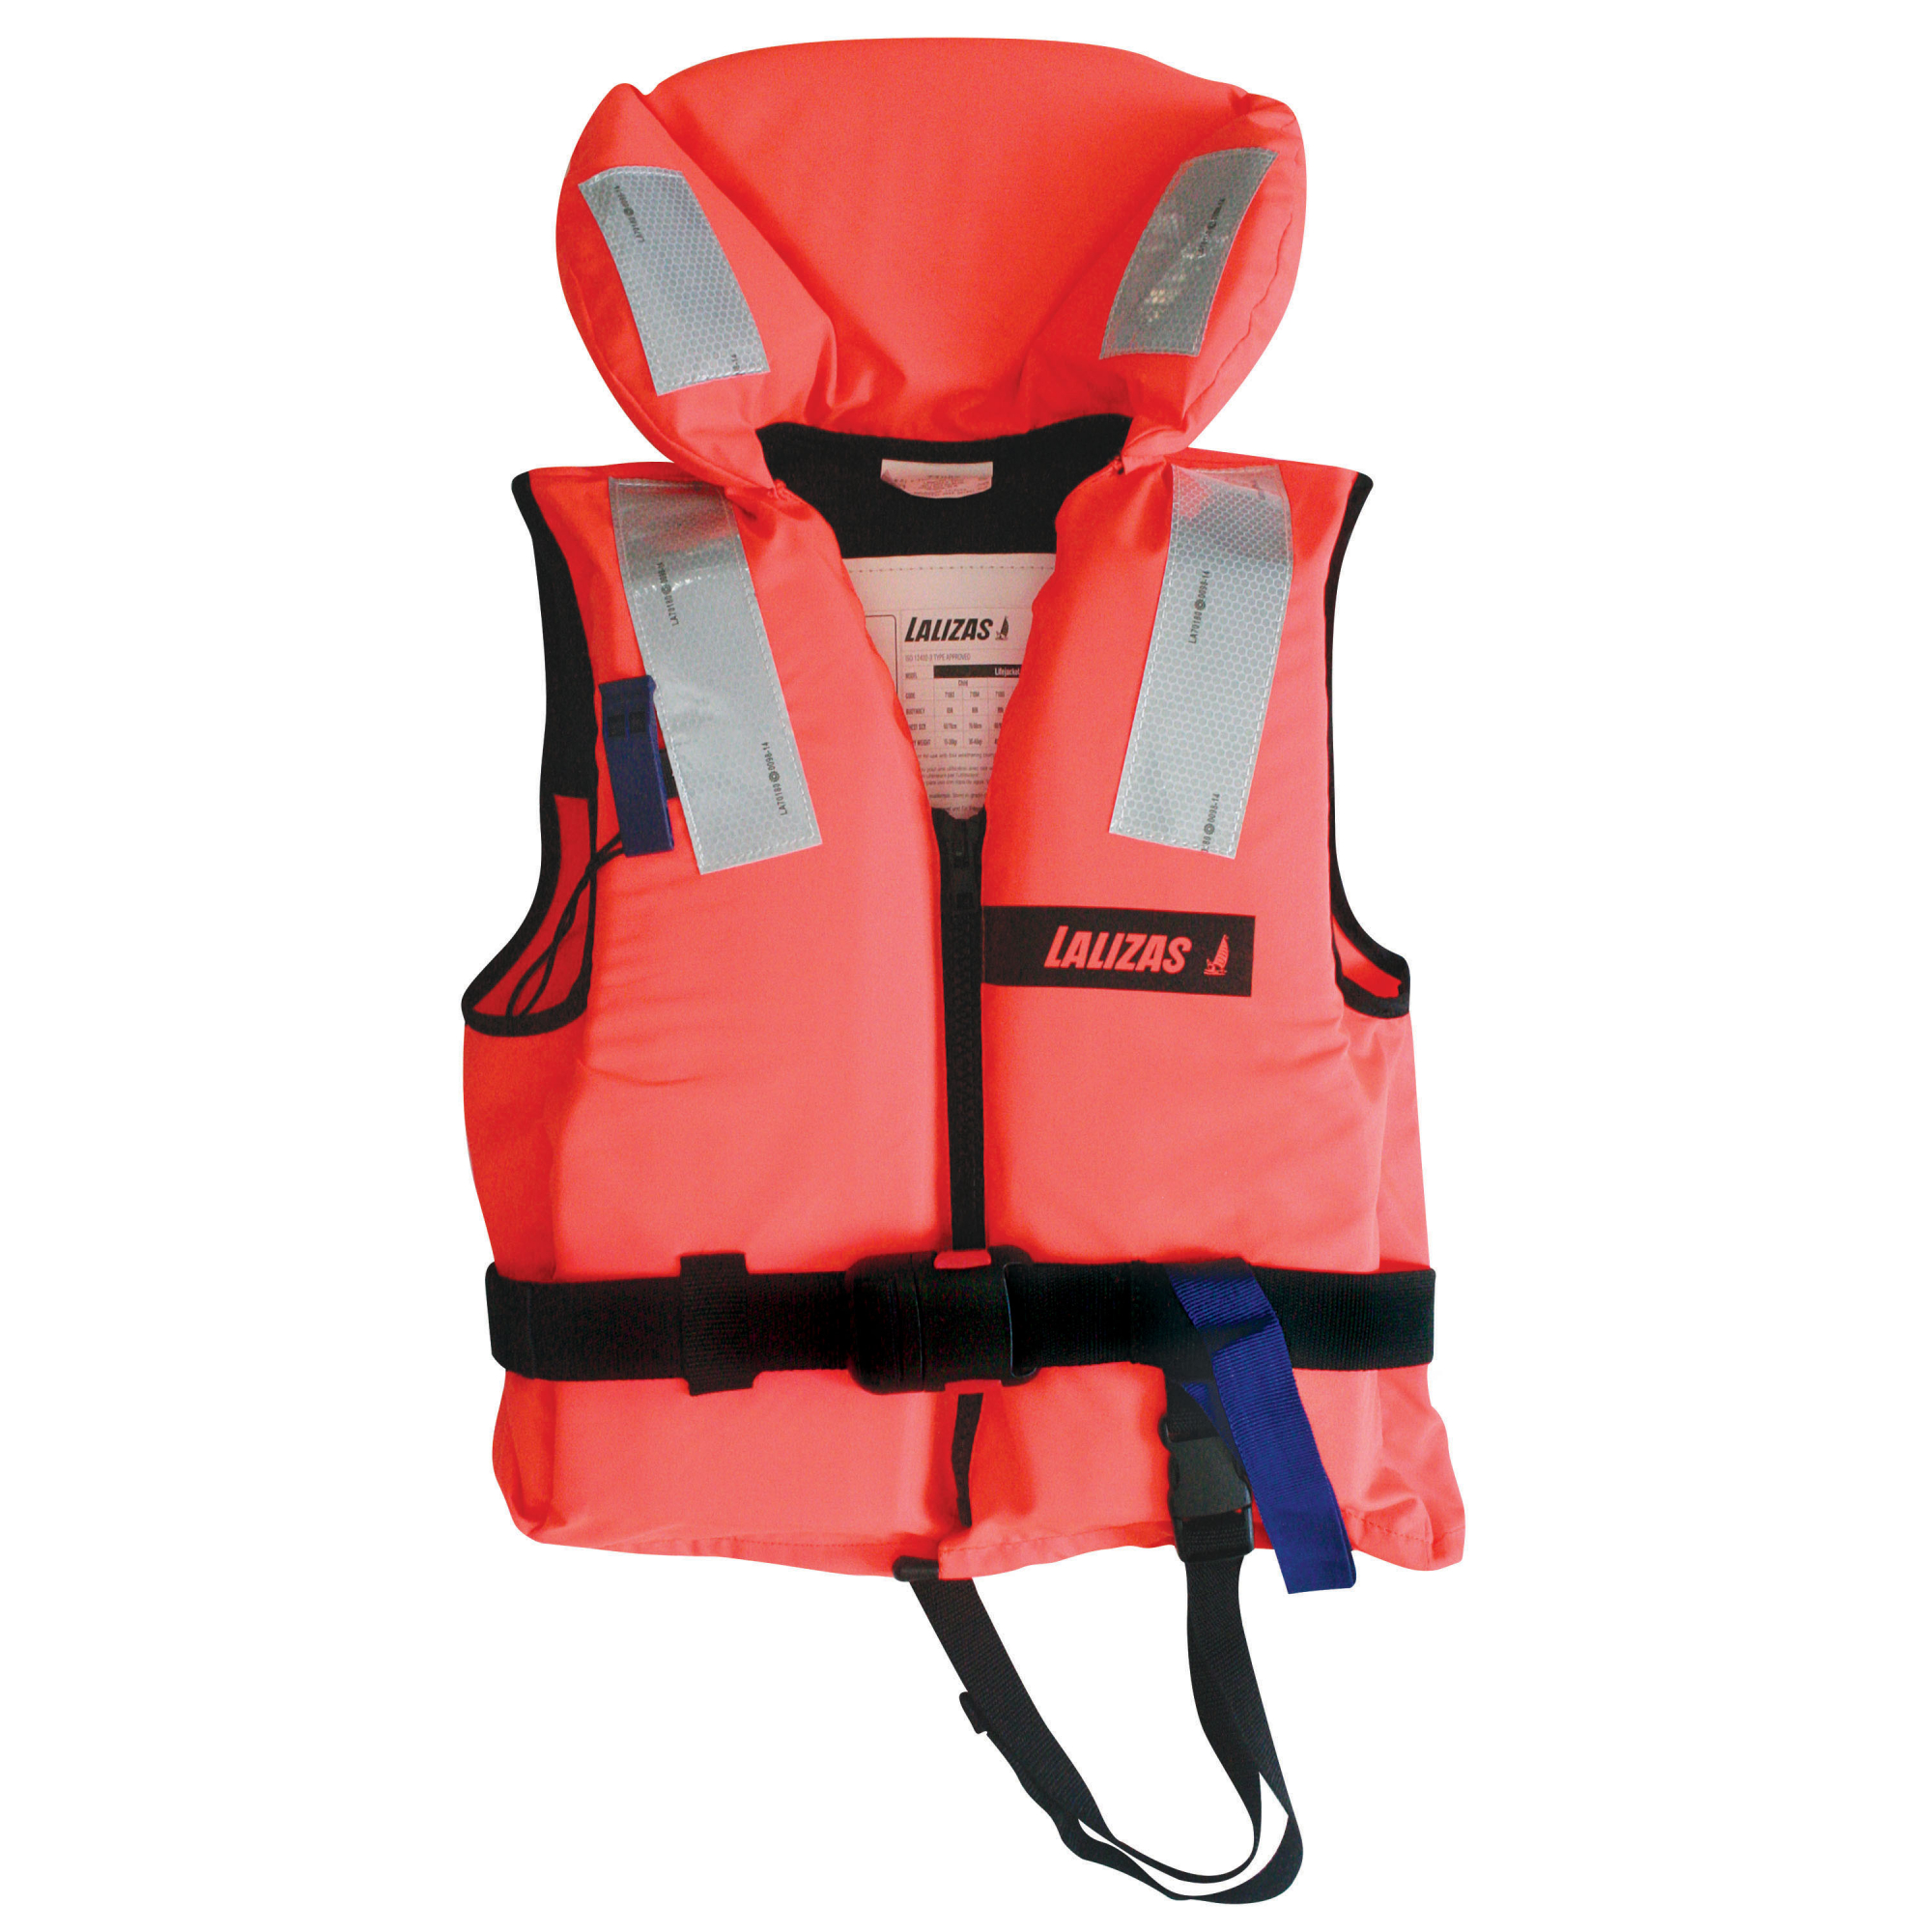 Пенопластовый спасательный жилет LALIZAS Lifejacket 100N 71080 ISO 12402-4 50-70 кг обхват груди 90-100 см